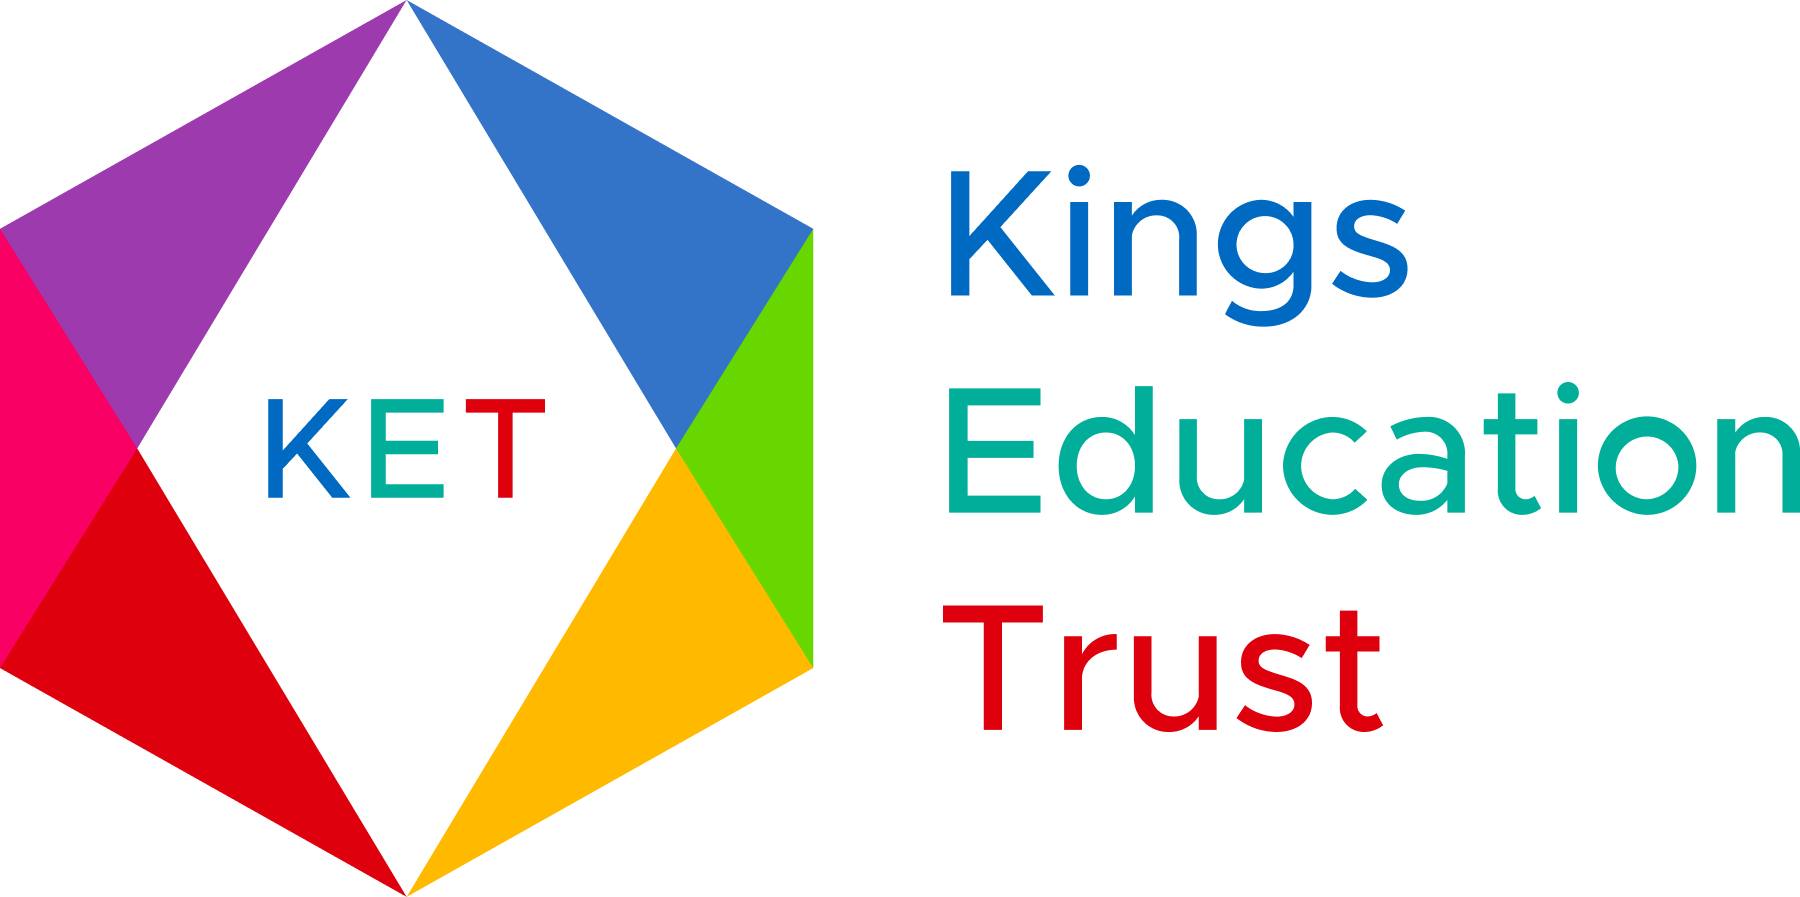 Image of KET logo